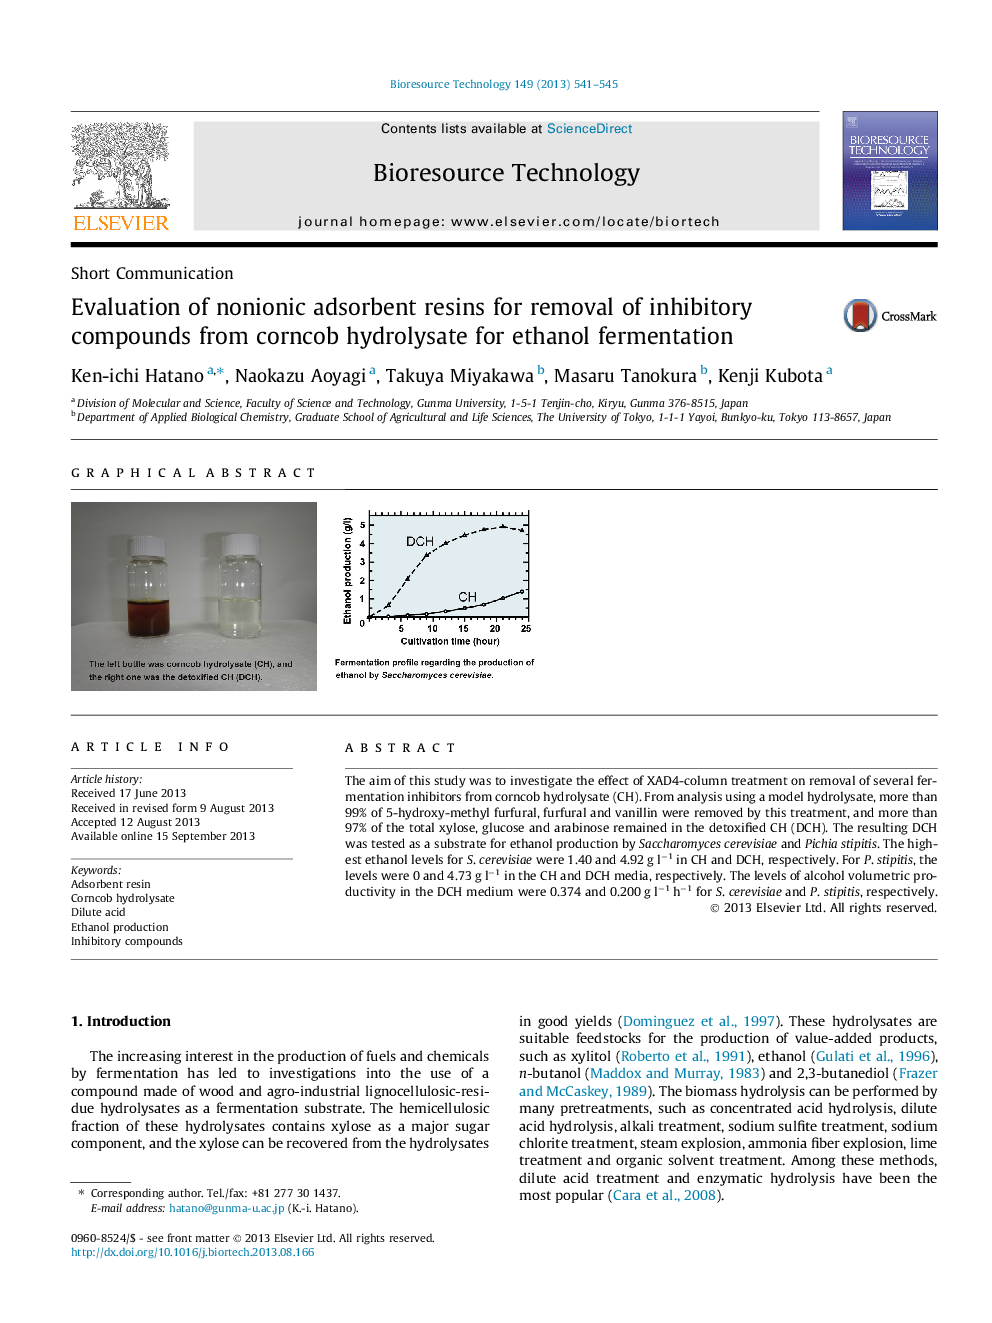 بررسی رزین های جاذب غیر یونی برای حذف ترکیبات مهار کننده از هیدرولیزات ذرت برای تخمیر اتانول 